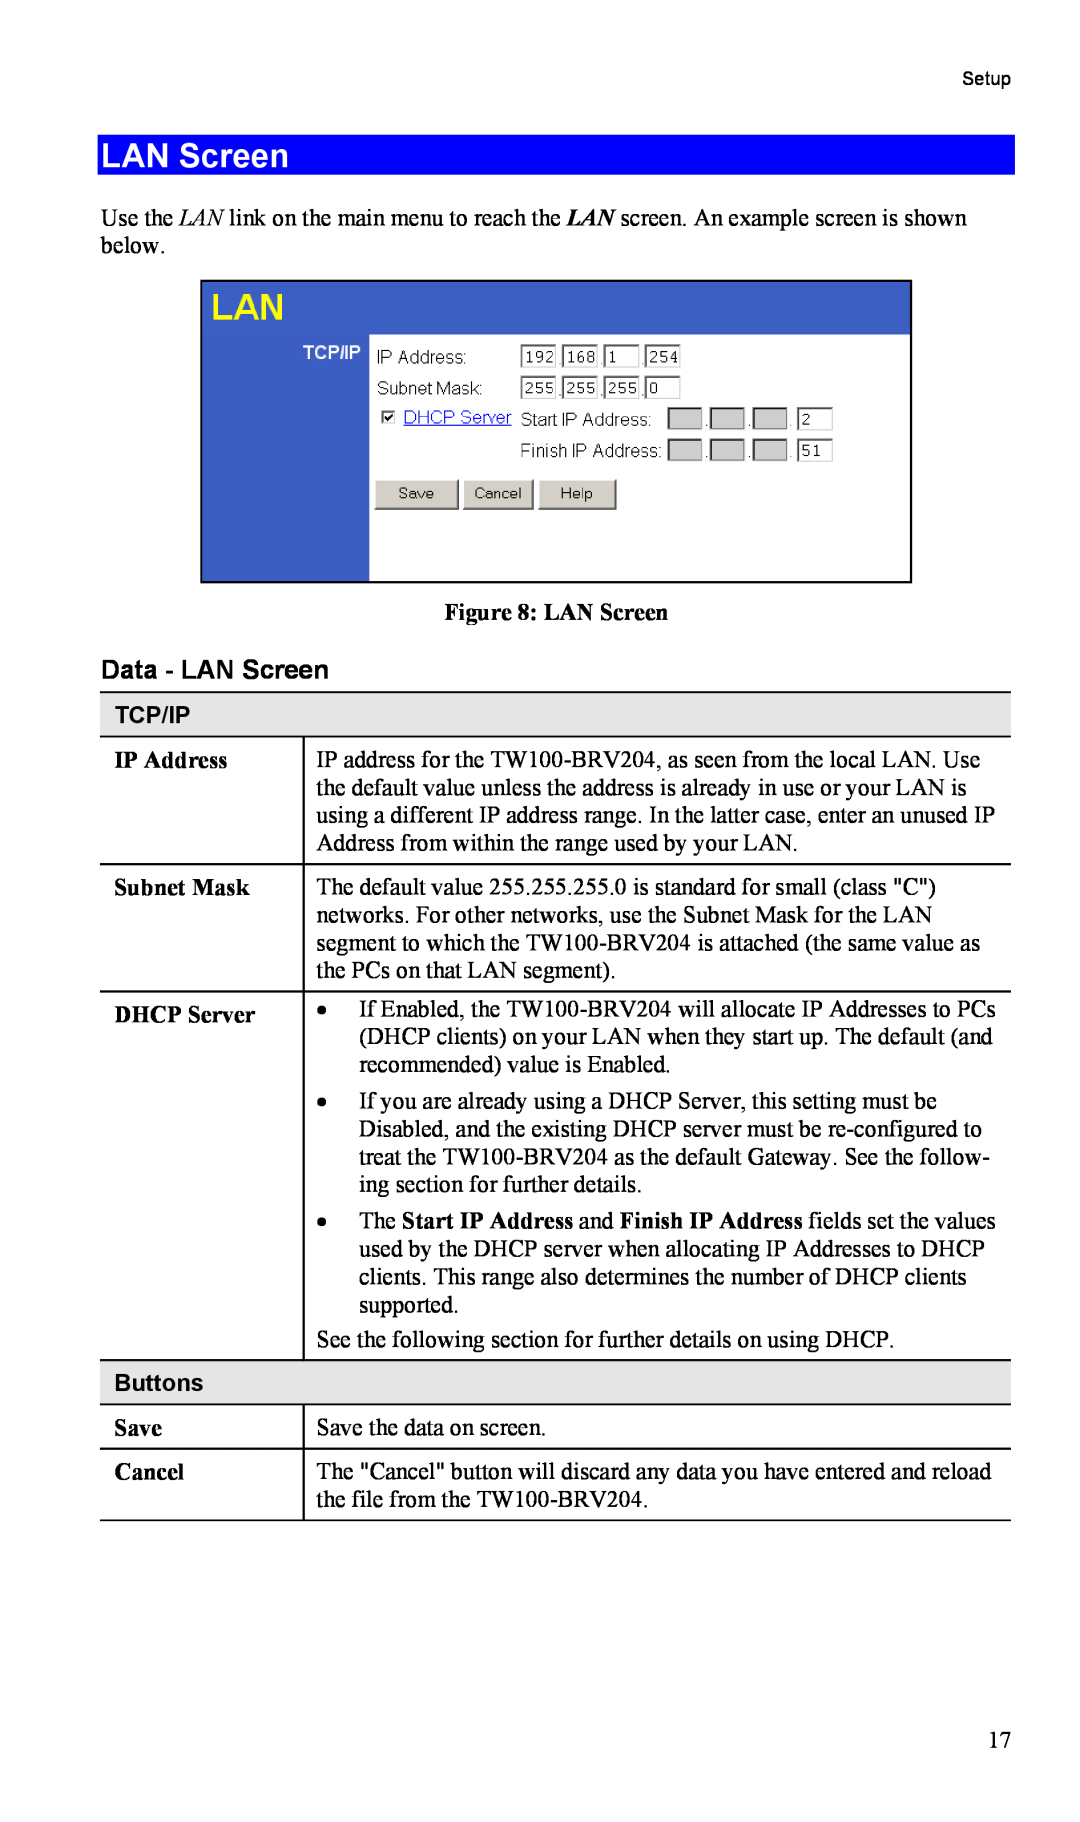 TRENDnet TW100-BRV204, VPN Firewall Router manual Data - LAN Screen, Tcp/Ip, Buttons 